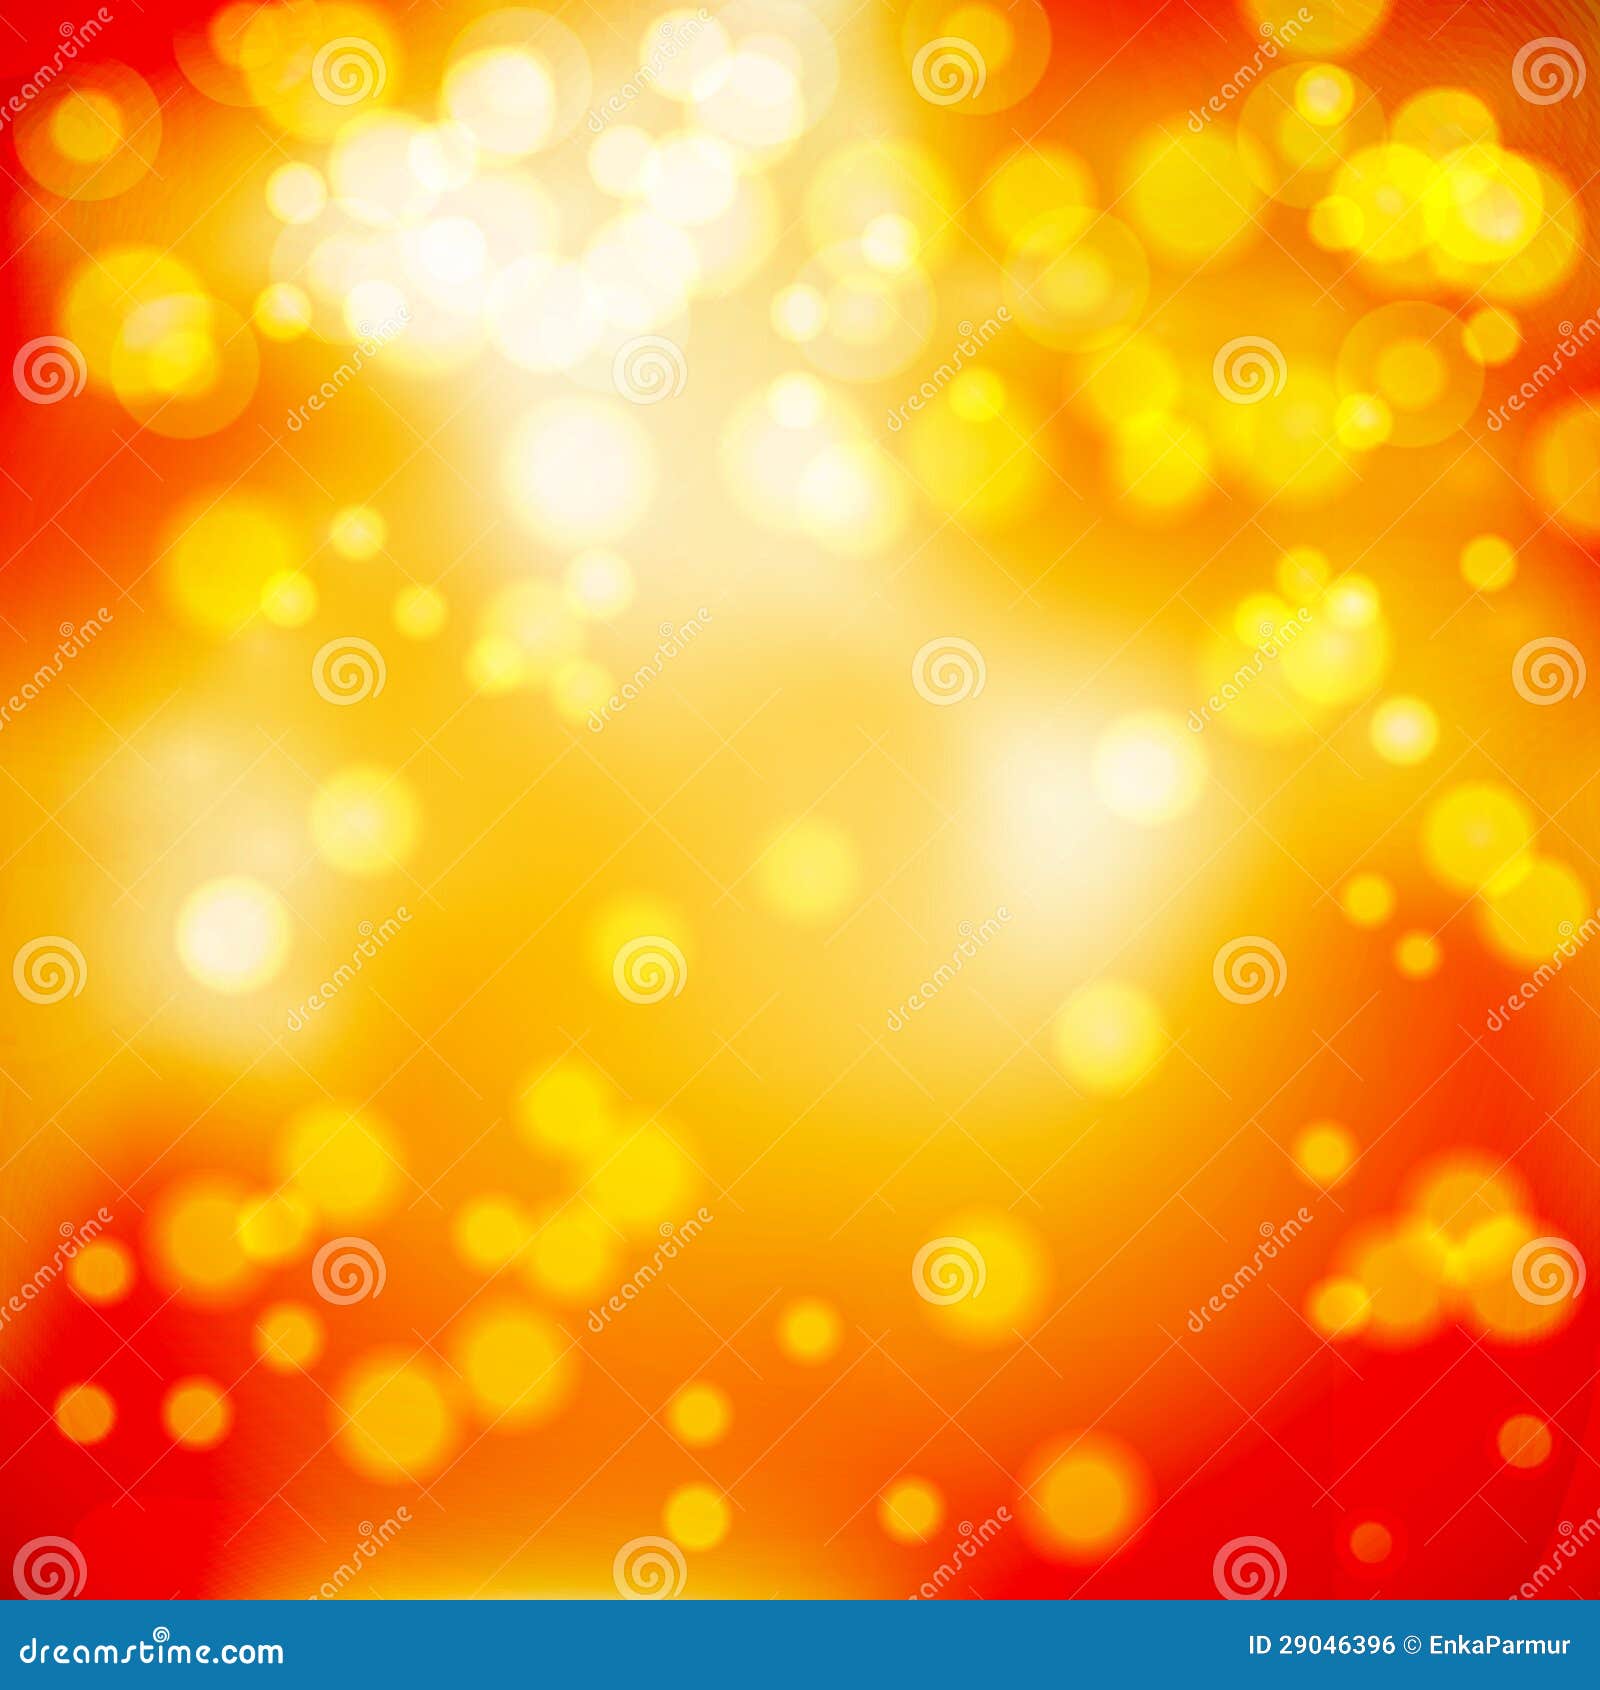 Yellow red glow: Sự kết hợp giữa sự phát sáng và sự chói lòa của màu sắc đỏ và vàng sẽ khiến bạn say mê ngay từ cái nhìn đầu tiên. Hãy đón xem hình ảnh liên quan đến Yellow red glow và tận hưởng cảm giác mê hoặc của sự phát sáng.